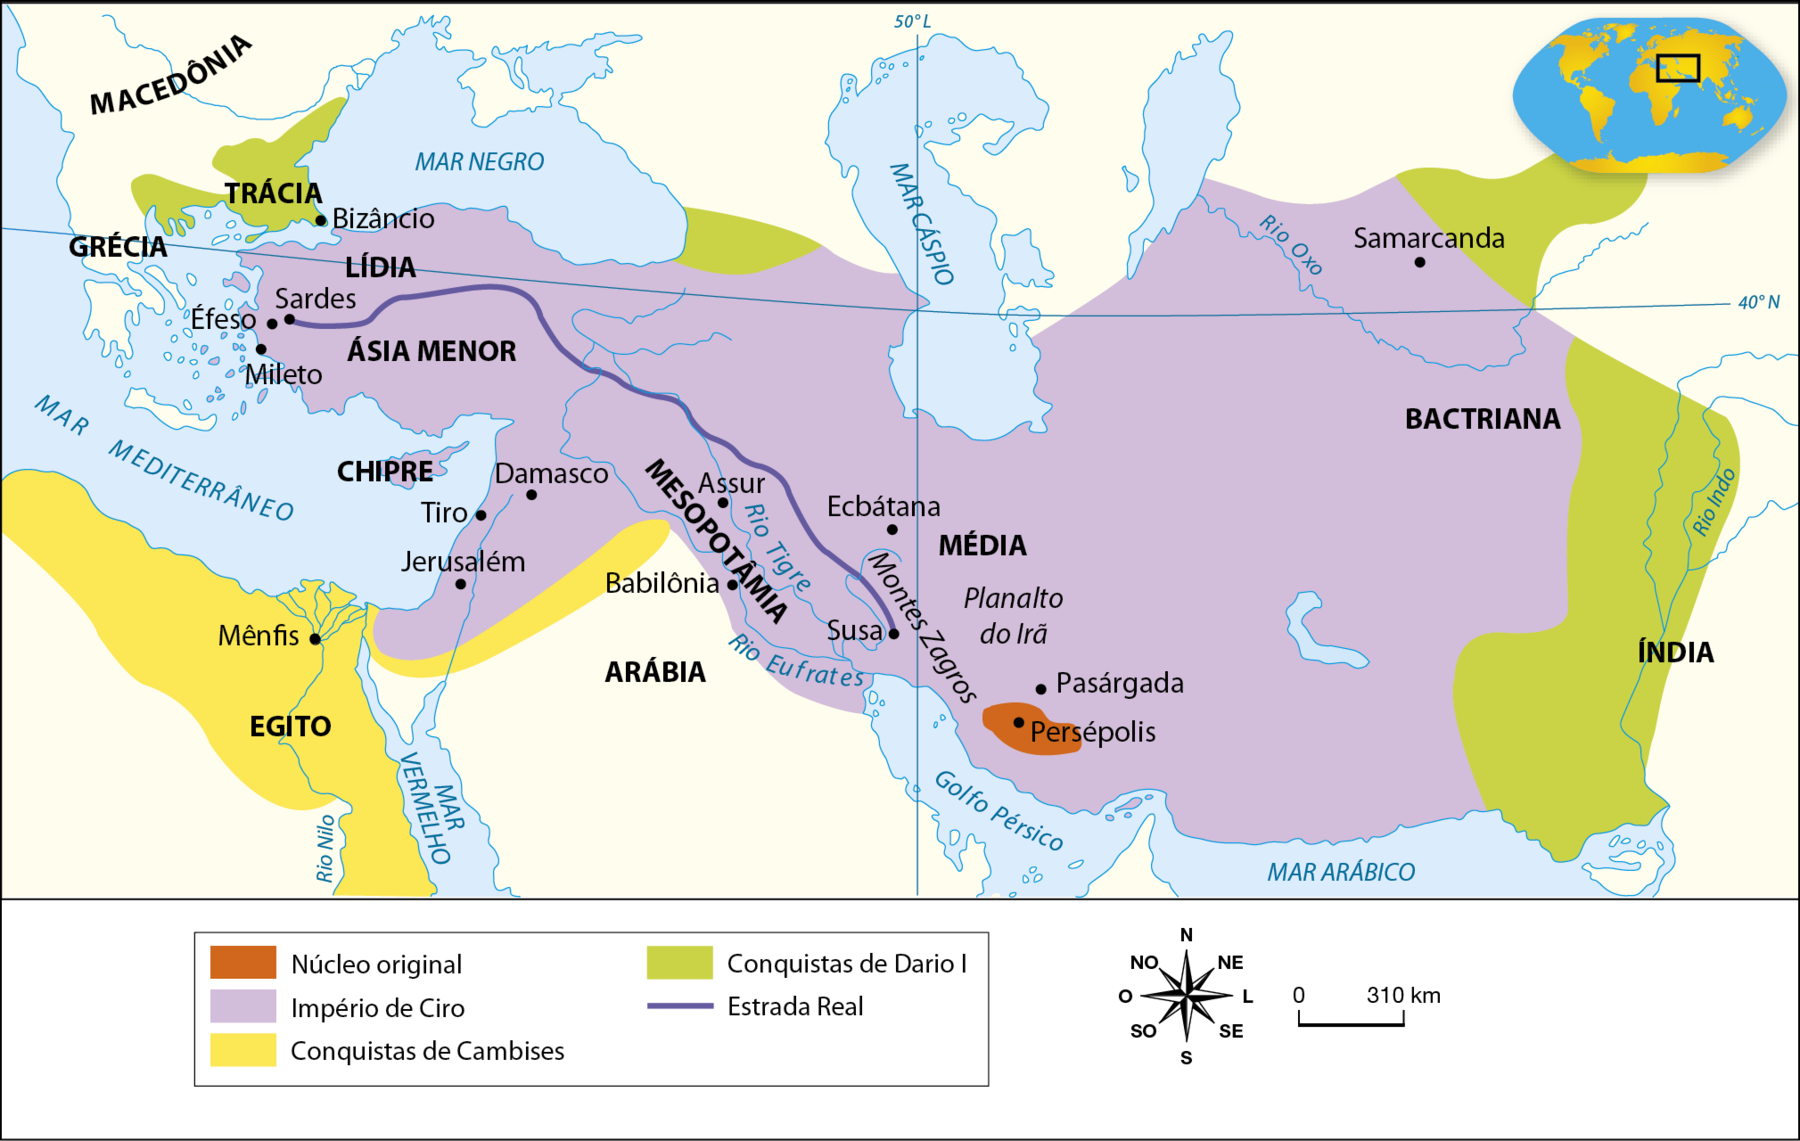 Mapa. A Expansão do Império Persa (550 antes de Cristo a 330 antes de Cristo). Mapa representando, no centro, as regiões da Mesopotâmia (com destaque para os rios Tigre e Eufrates) e da Média (com destaque para o Planalto do Irã e o Monte Zagros); além de parte do Egito, no leste da África (com destaque para o Rio Nilo); da Ásia Menor, ao sul do Mar Negro;  da Trácia, na região do Mar Egeu, incluindo o estreito de Dardanelos;  parte da Península Arábica; da Bactriana, a leste do Mar de Aral; e da Índia, com destaque para o Rio Indo. Há territórios destacados em cores distintas e uma linha indicando uma estrada. Em laranja, 'Núcleo original' persa, compreendendo um pequeno território ao norte do Golfo Pérsico. Com destaque para a cidade de Persépolis. Em lilás, o 'Império de Ciro', compreendendo um grande território que se estende, no leste, da região em torno do Rio Oxo, na Ásia Central, até o Mar Mediterrâneo, no leste, englobando as regiões de Bactriana, Média, Mesopotâmia, Chipre, Ásia Menor, Lídia e parte do Oriente Médio. Com destaque para as cidades de: Samarcanda, na região da Bactriana; Persépolis, Pasárgada e Ecbátana, na região da Média; Assur e Babilônia, na Mesopotâmia; Damasco, Tiro e Jerusalém, no Oriente Médio; e Sardes, Éfeso e Mileto, na Ásia Menor. Em amarelo, 'Conquistas de Cambises', abarcando o norte e o leste do Egito, com destaque para a cidade de Mênfis, no Delta do Nilo; e um território desde a Península do Sinai até o Rio Tigre, no norte da Arábia. Em verde, 'Conquistas de Dario Primeiro', compreendendo a região da Trácia, com destaque para a cidade de Bizâncio; um território a leste do Mar Negro; um território a leste de Samarcanda, na Ásia Central; e parte do vale do Rio Indo, até o Mar Arábico. Uma linha de cor azul indica, 'Estrada Real', ligando Susa, na Média, a oeste do Monte Zagros; a Sardes, na Ásia Menor, na região da Península da Anatólia. No canto inferior direito, rosa dos ventos e escala de 0 a 310 quilômetros.